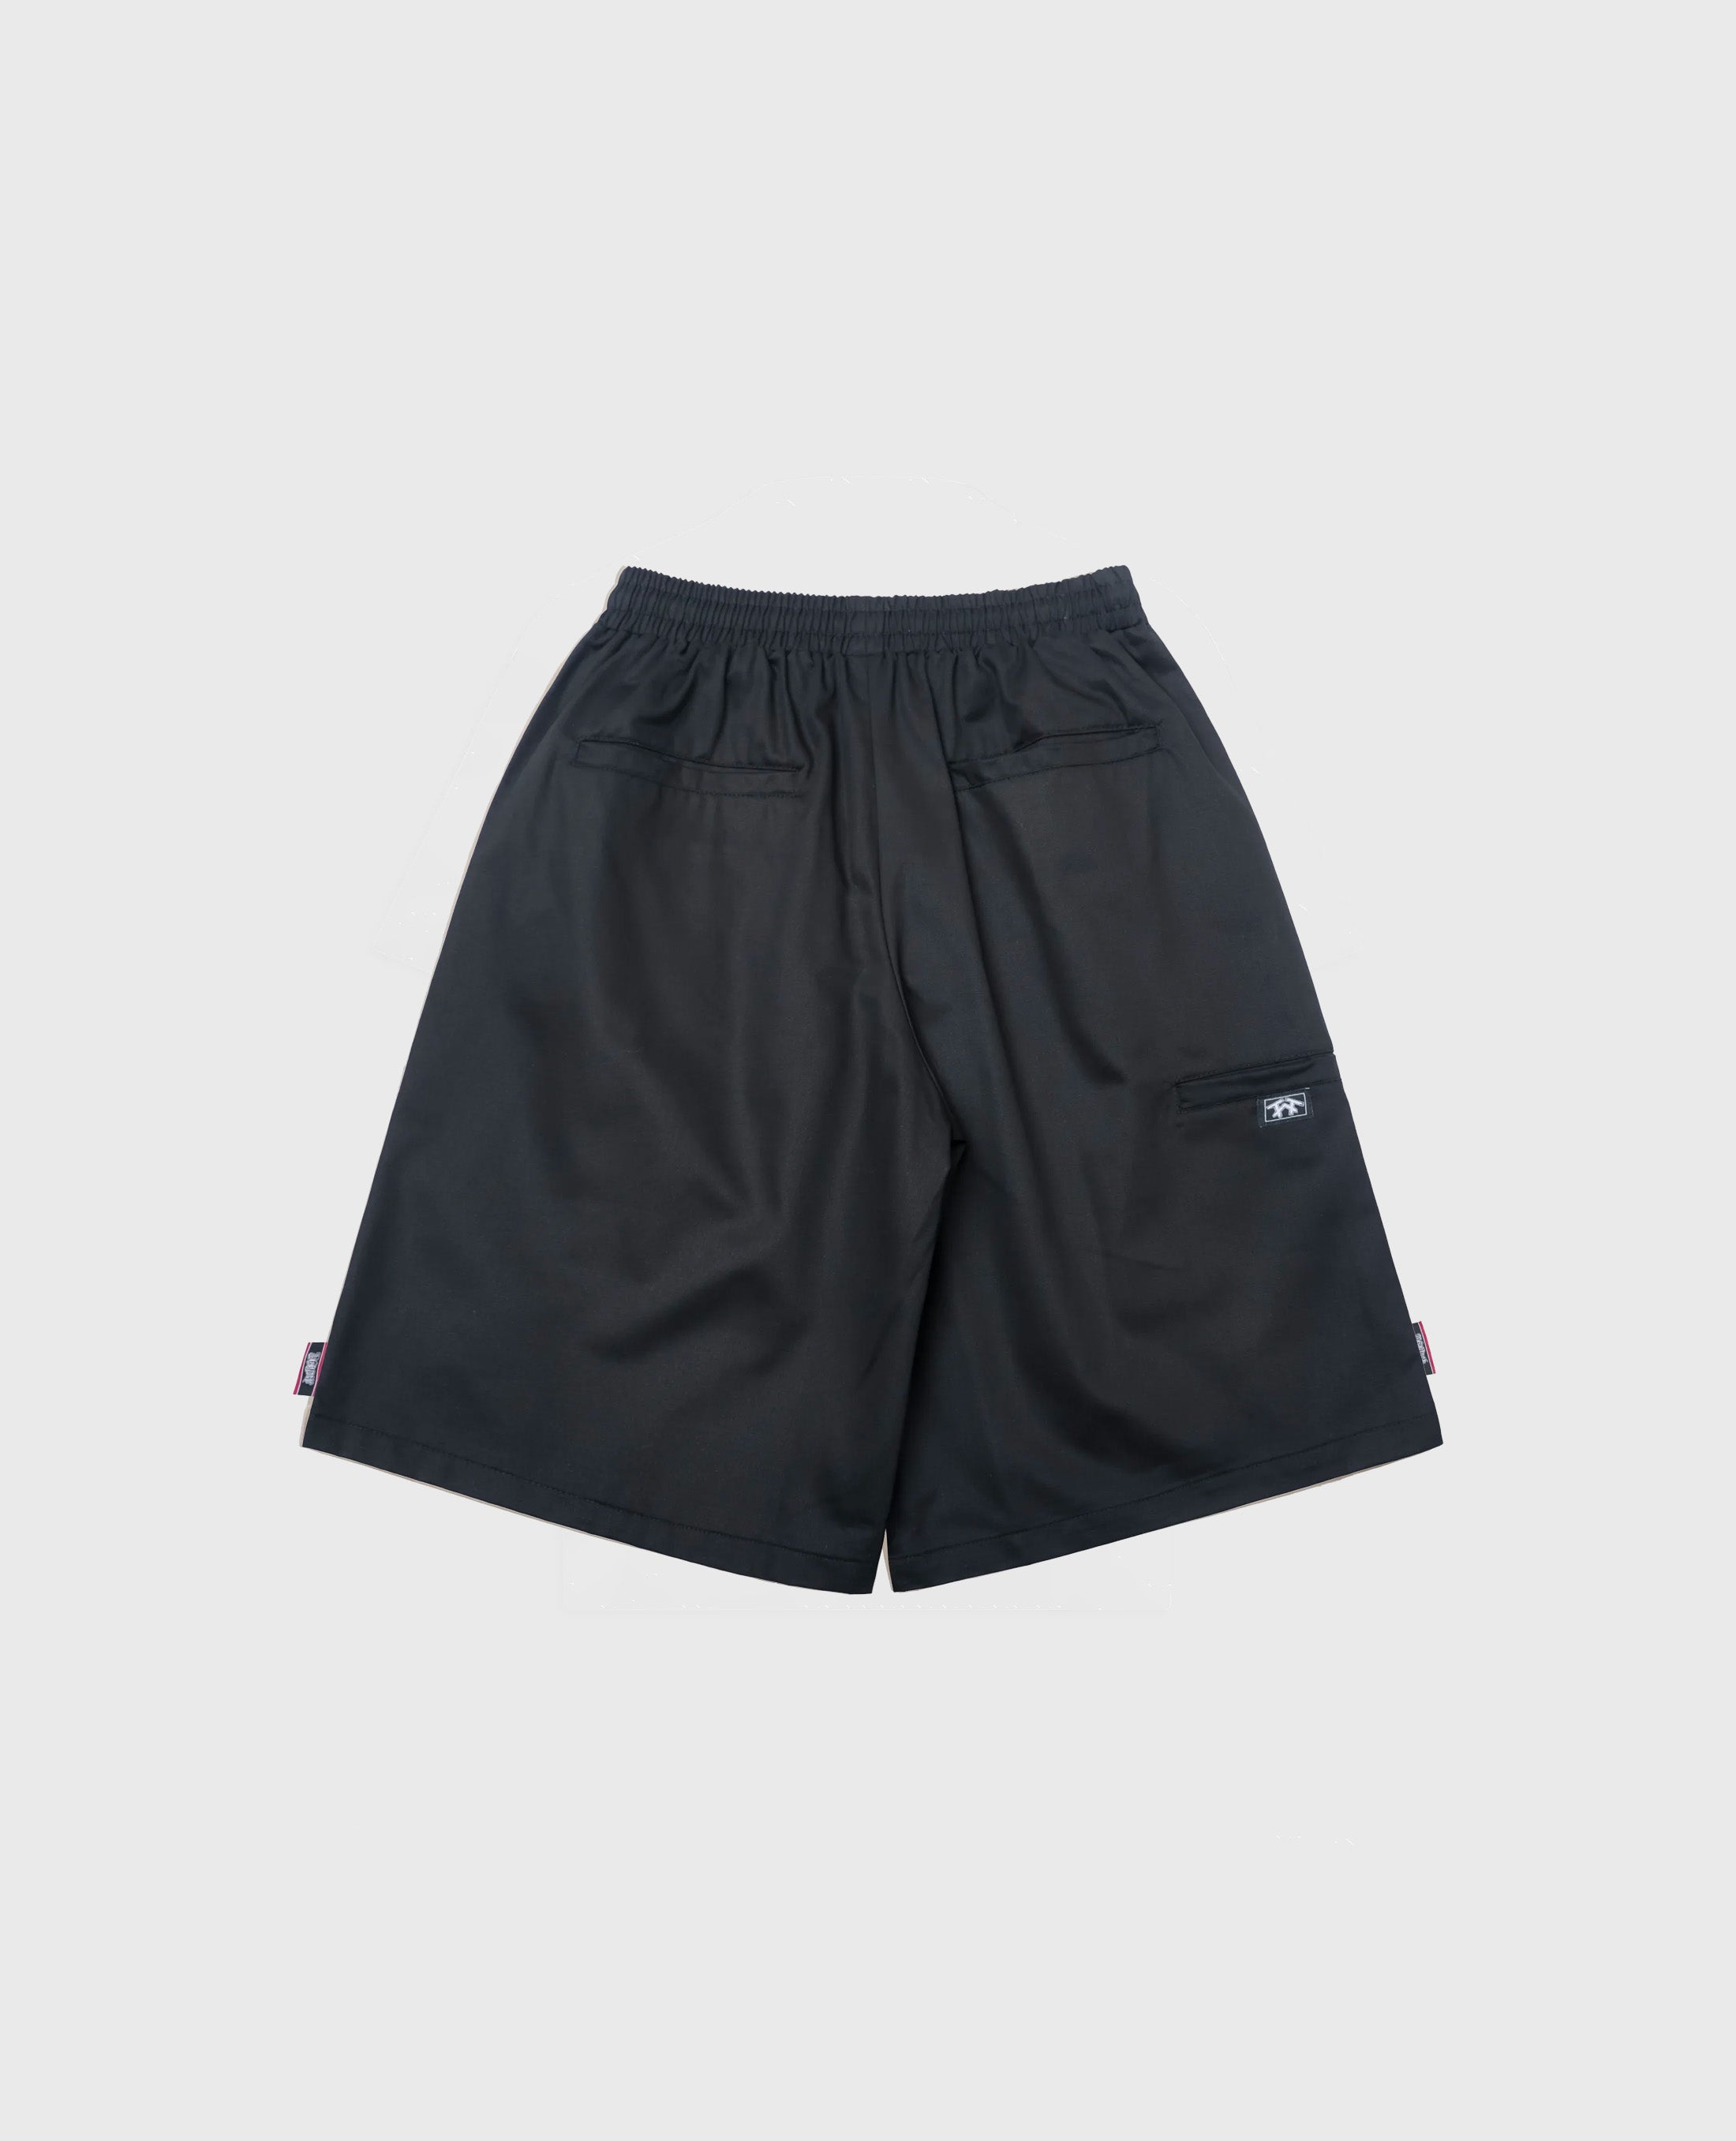 West Coast Shorts